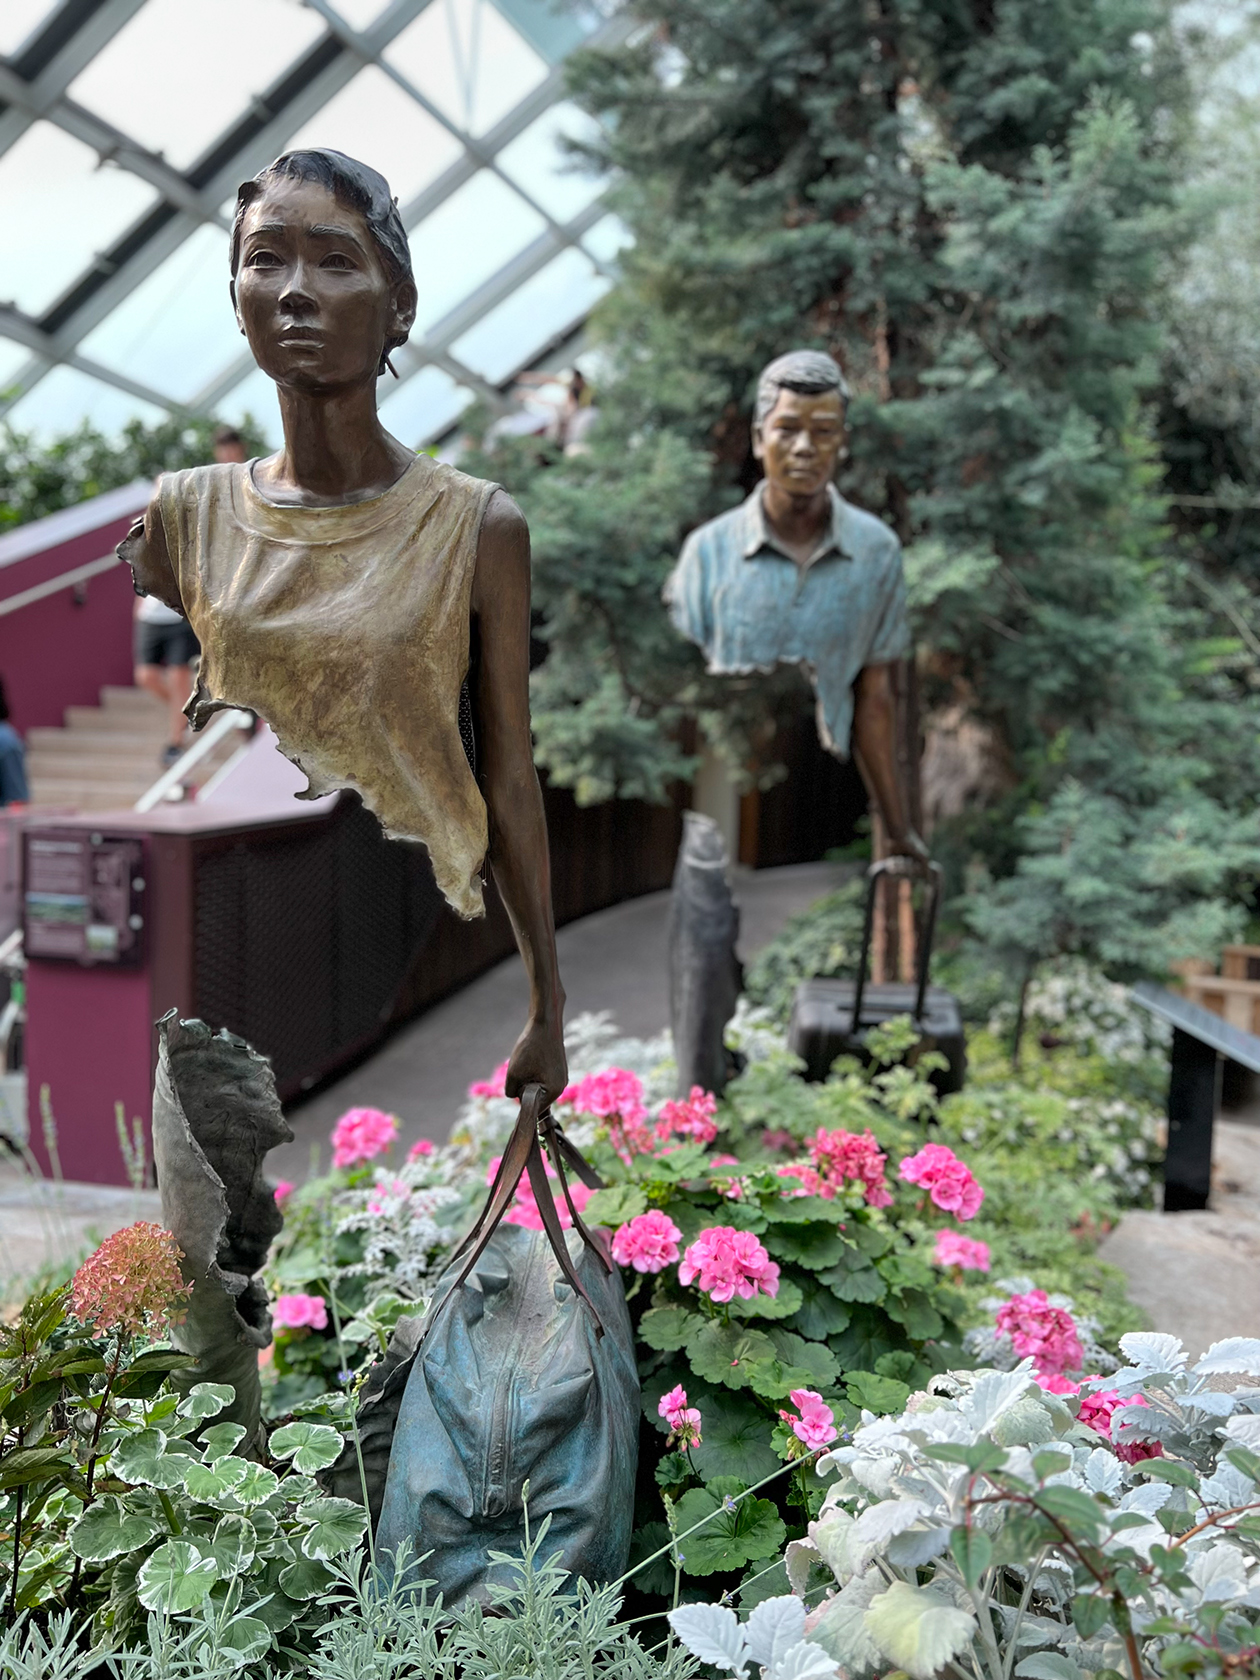 Скульптура «Семья путешественников» в оранжерее «Купол цветов». Люди здесь как будто грустные и с пустотой. Смысл в том, что в каждом новом месте мы оставляем частичку себя